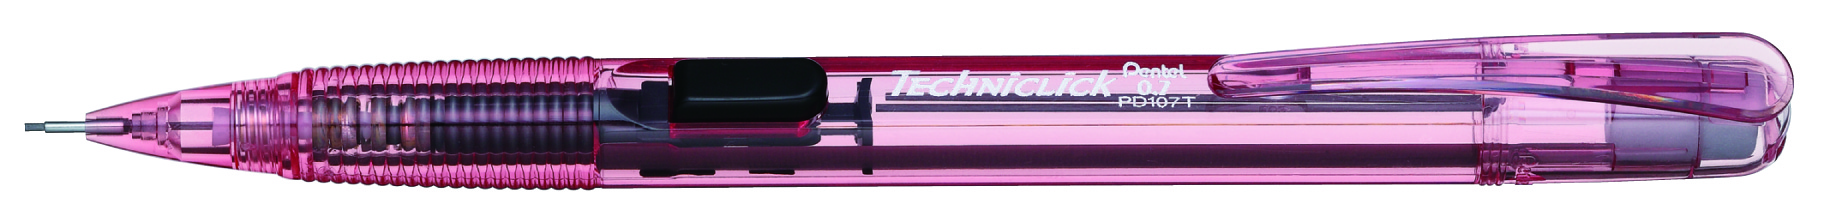 Lapicero Pentel techniclick, punto 0.7 m Lapicero Pentel color rosa, punta 0.7 mm, punta fija de 3.5 mm, con goma y tapa en la parte superior, con agarre estirado para mayor comodidad, con botón color rosa para bajar puntillas                                                                       m, color rosa, 1 pieza                   - PD107T-PR